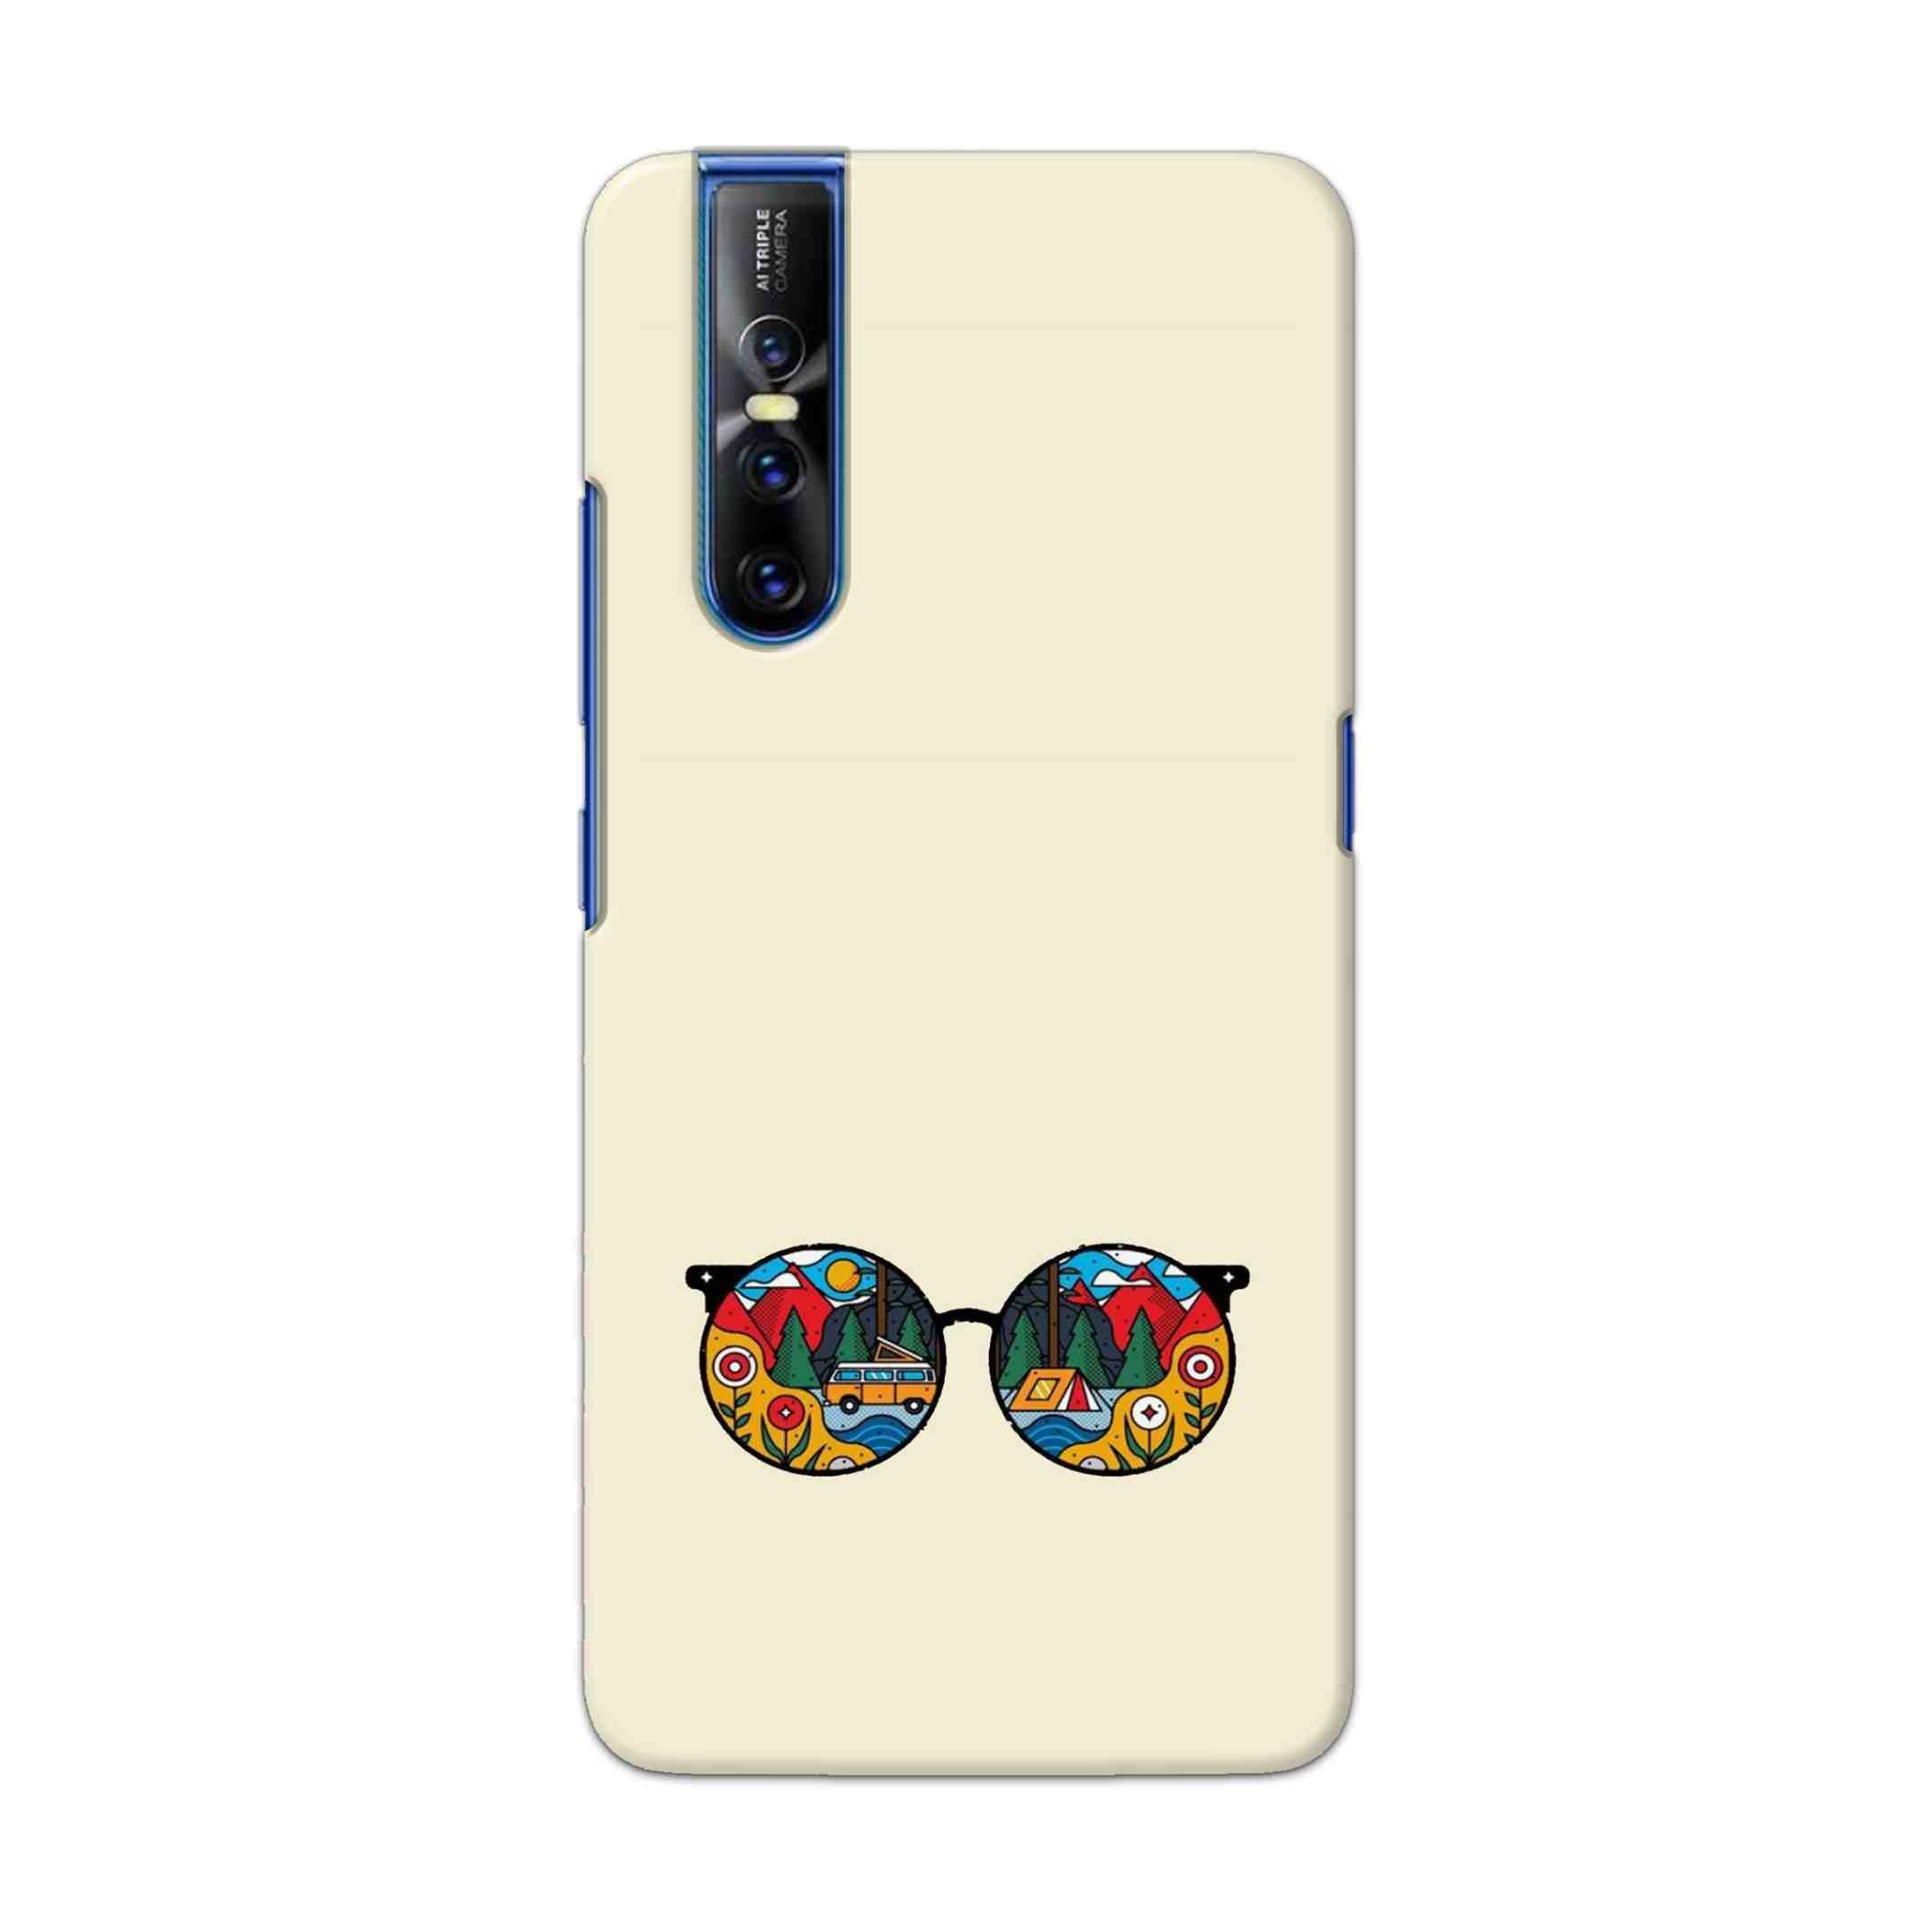 Buy Rainbow Sunglasses Hard Back Mobile Phone Case Cover For Vivo V15 Pro Online